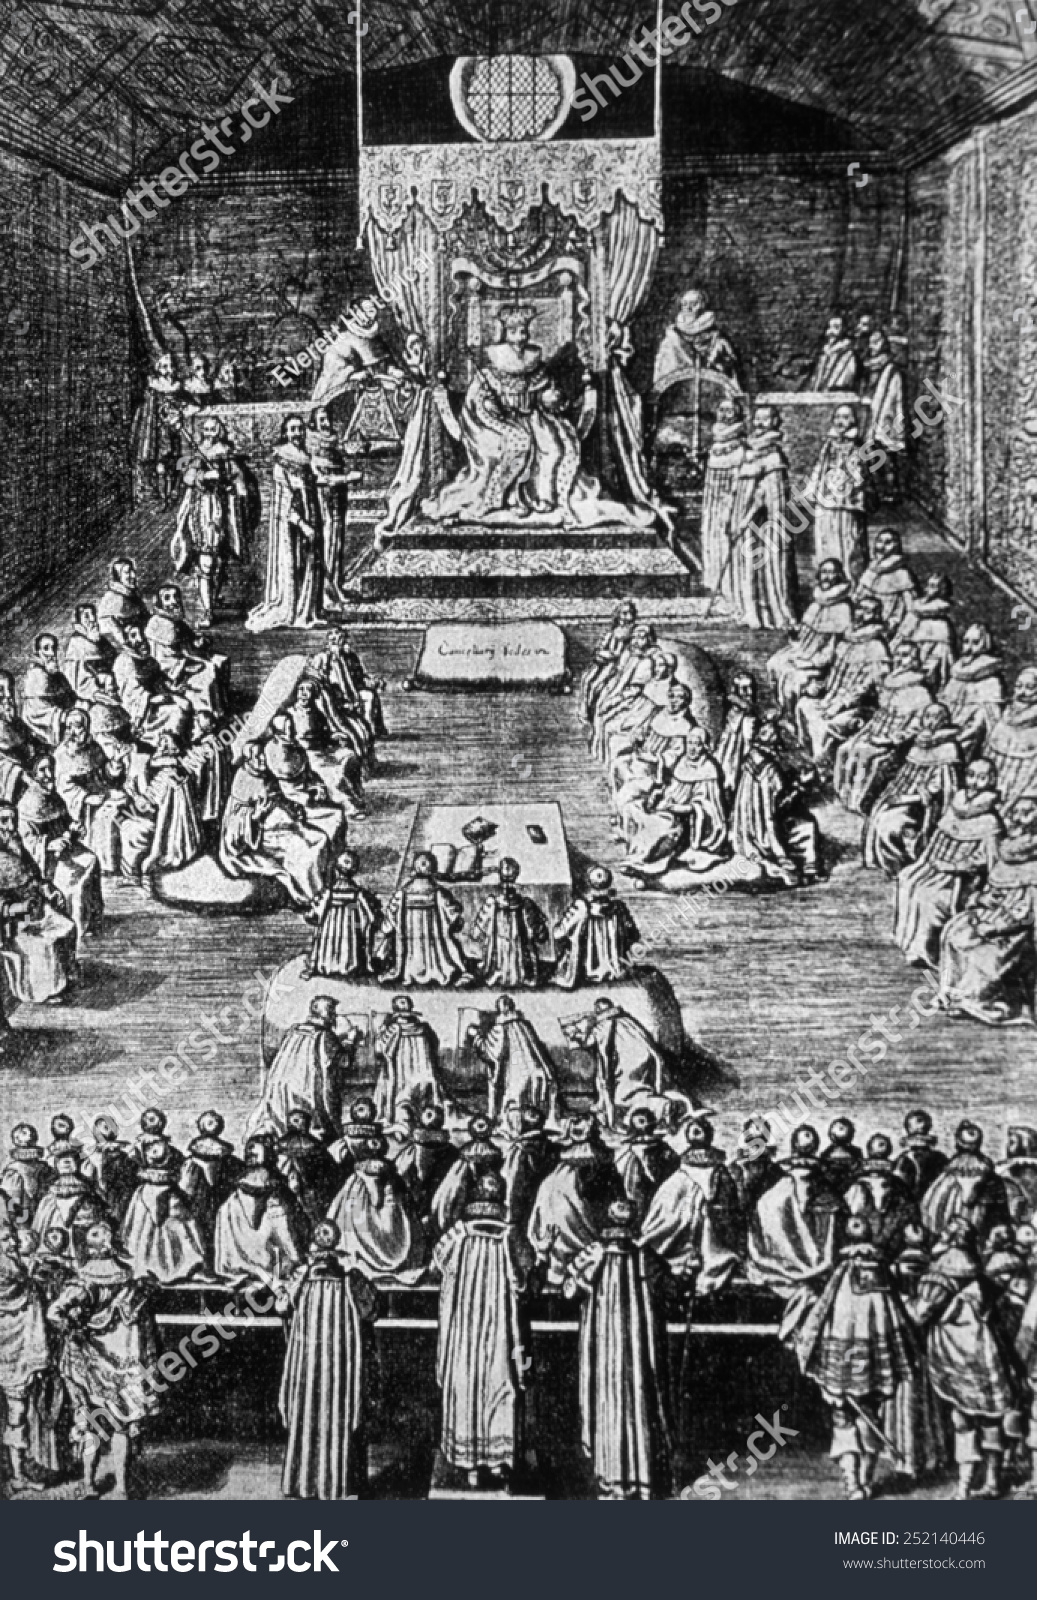 История английского парламента. Парламент в Англии 1265. Заседание парламента в Англии в 17 веке. Заседание английского парламента 17 века. Парламент Англии в средние века.